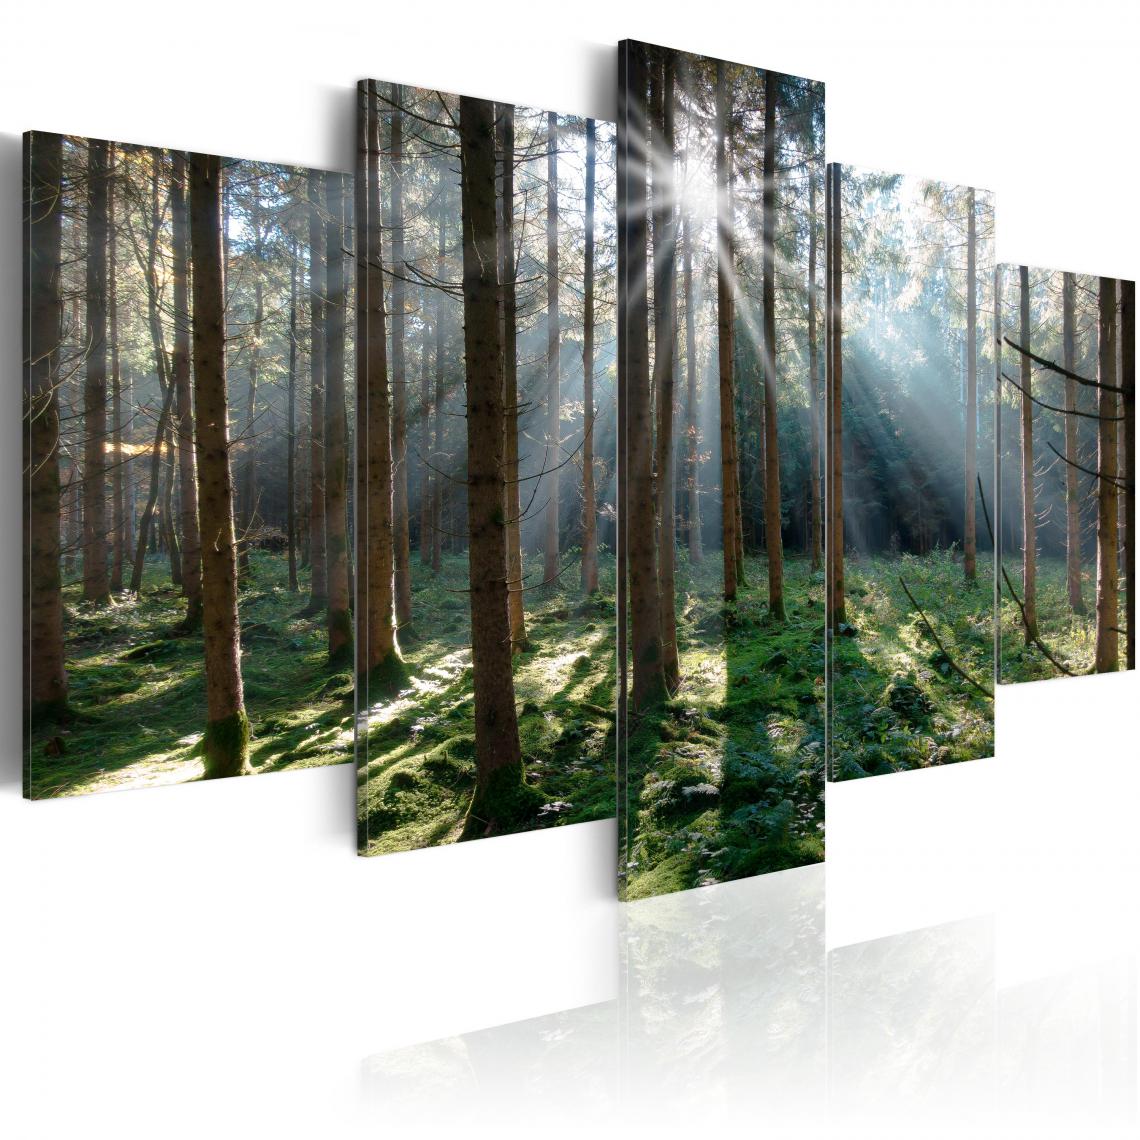 Decoshop26 - Tableau sur toile en 5 panneaux décoration murale image imprimée cadre en bois à suspendre Forêt de conte de fées 200x100 cm 11_0006249 - Tableaux, peintures